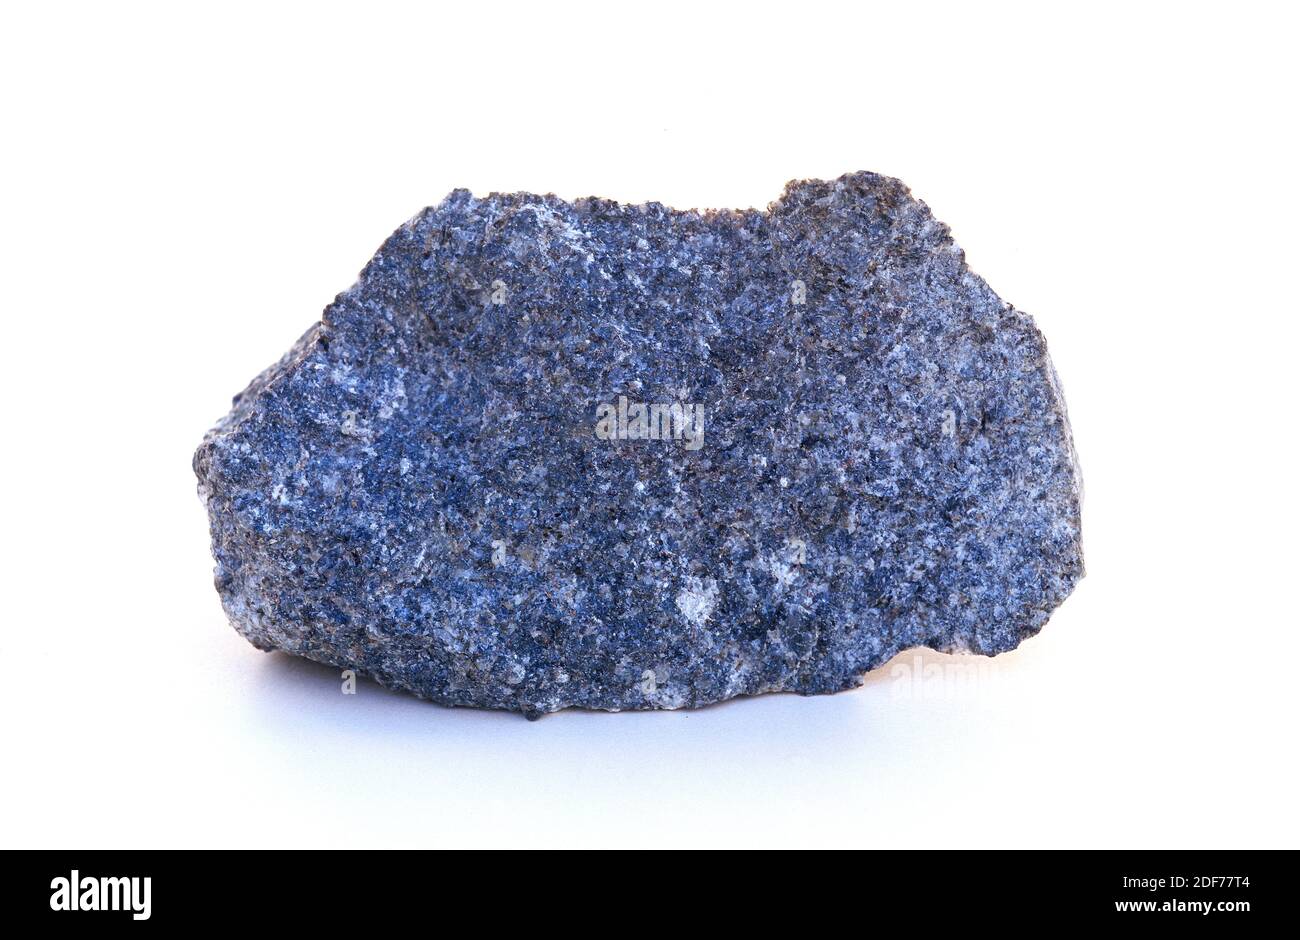 La diorita es una roca ígnea intrusiva. Su composición es intermedia entre el gabbro y el granito. Muestra. Foto de stock